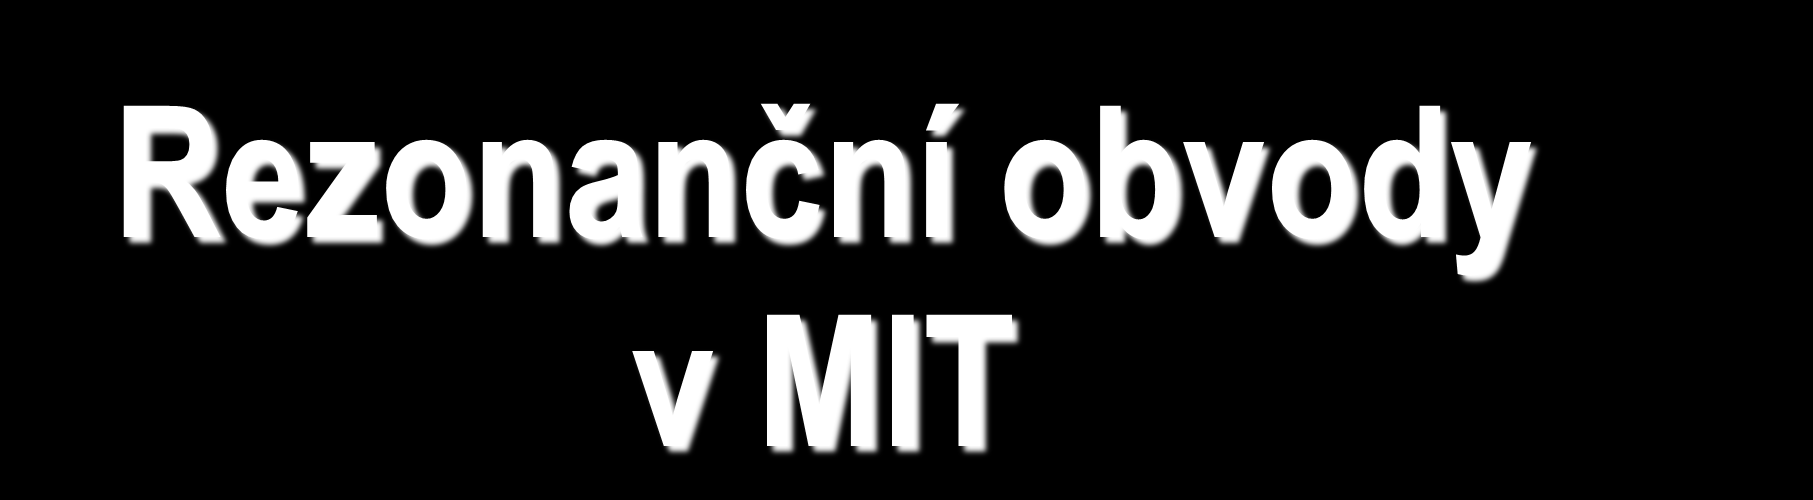 Rezonanční obvody v MIT